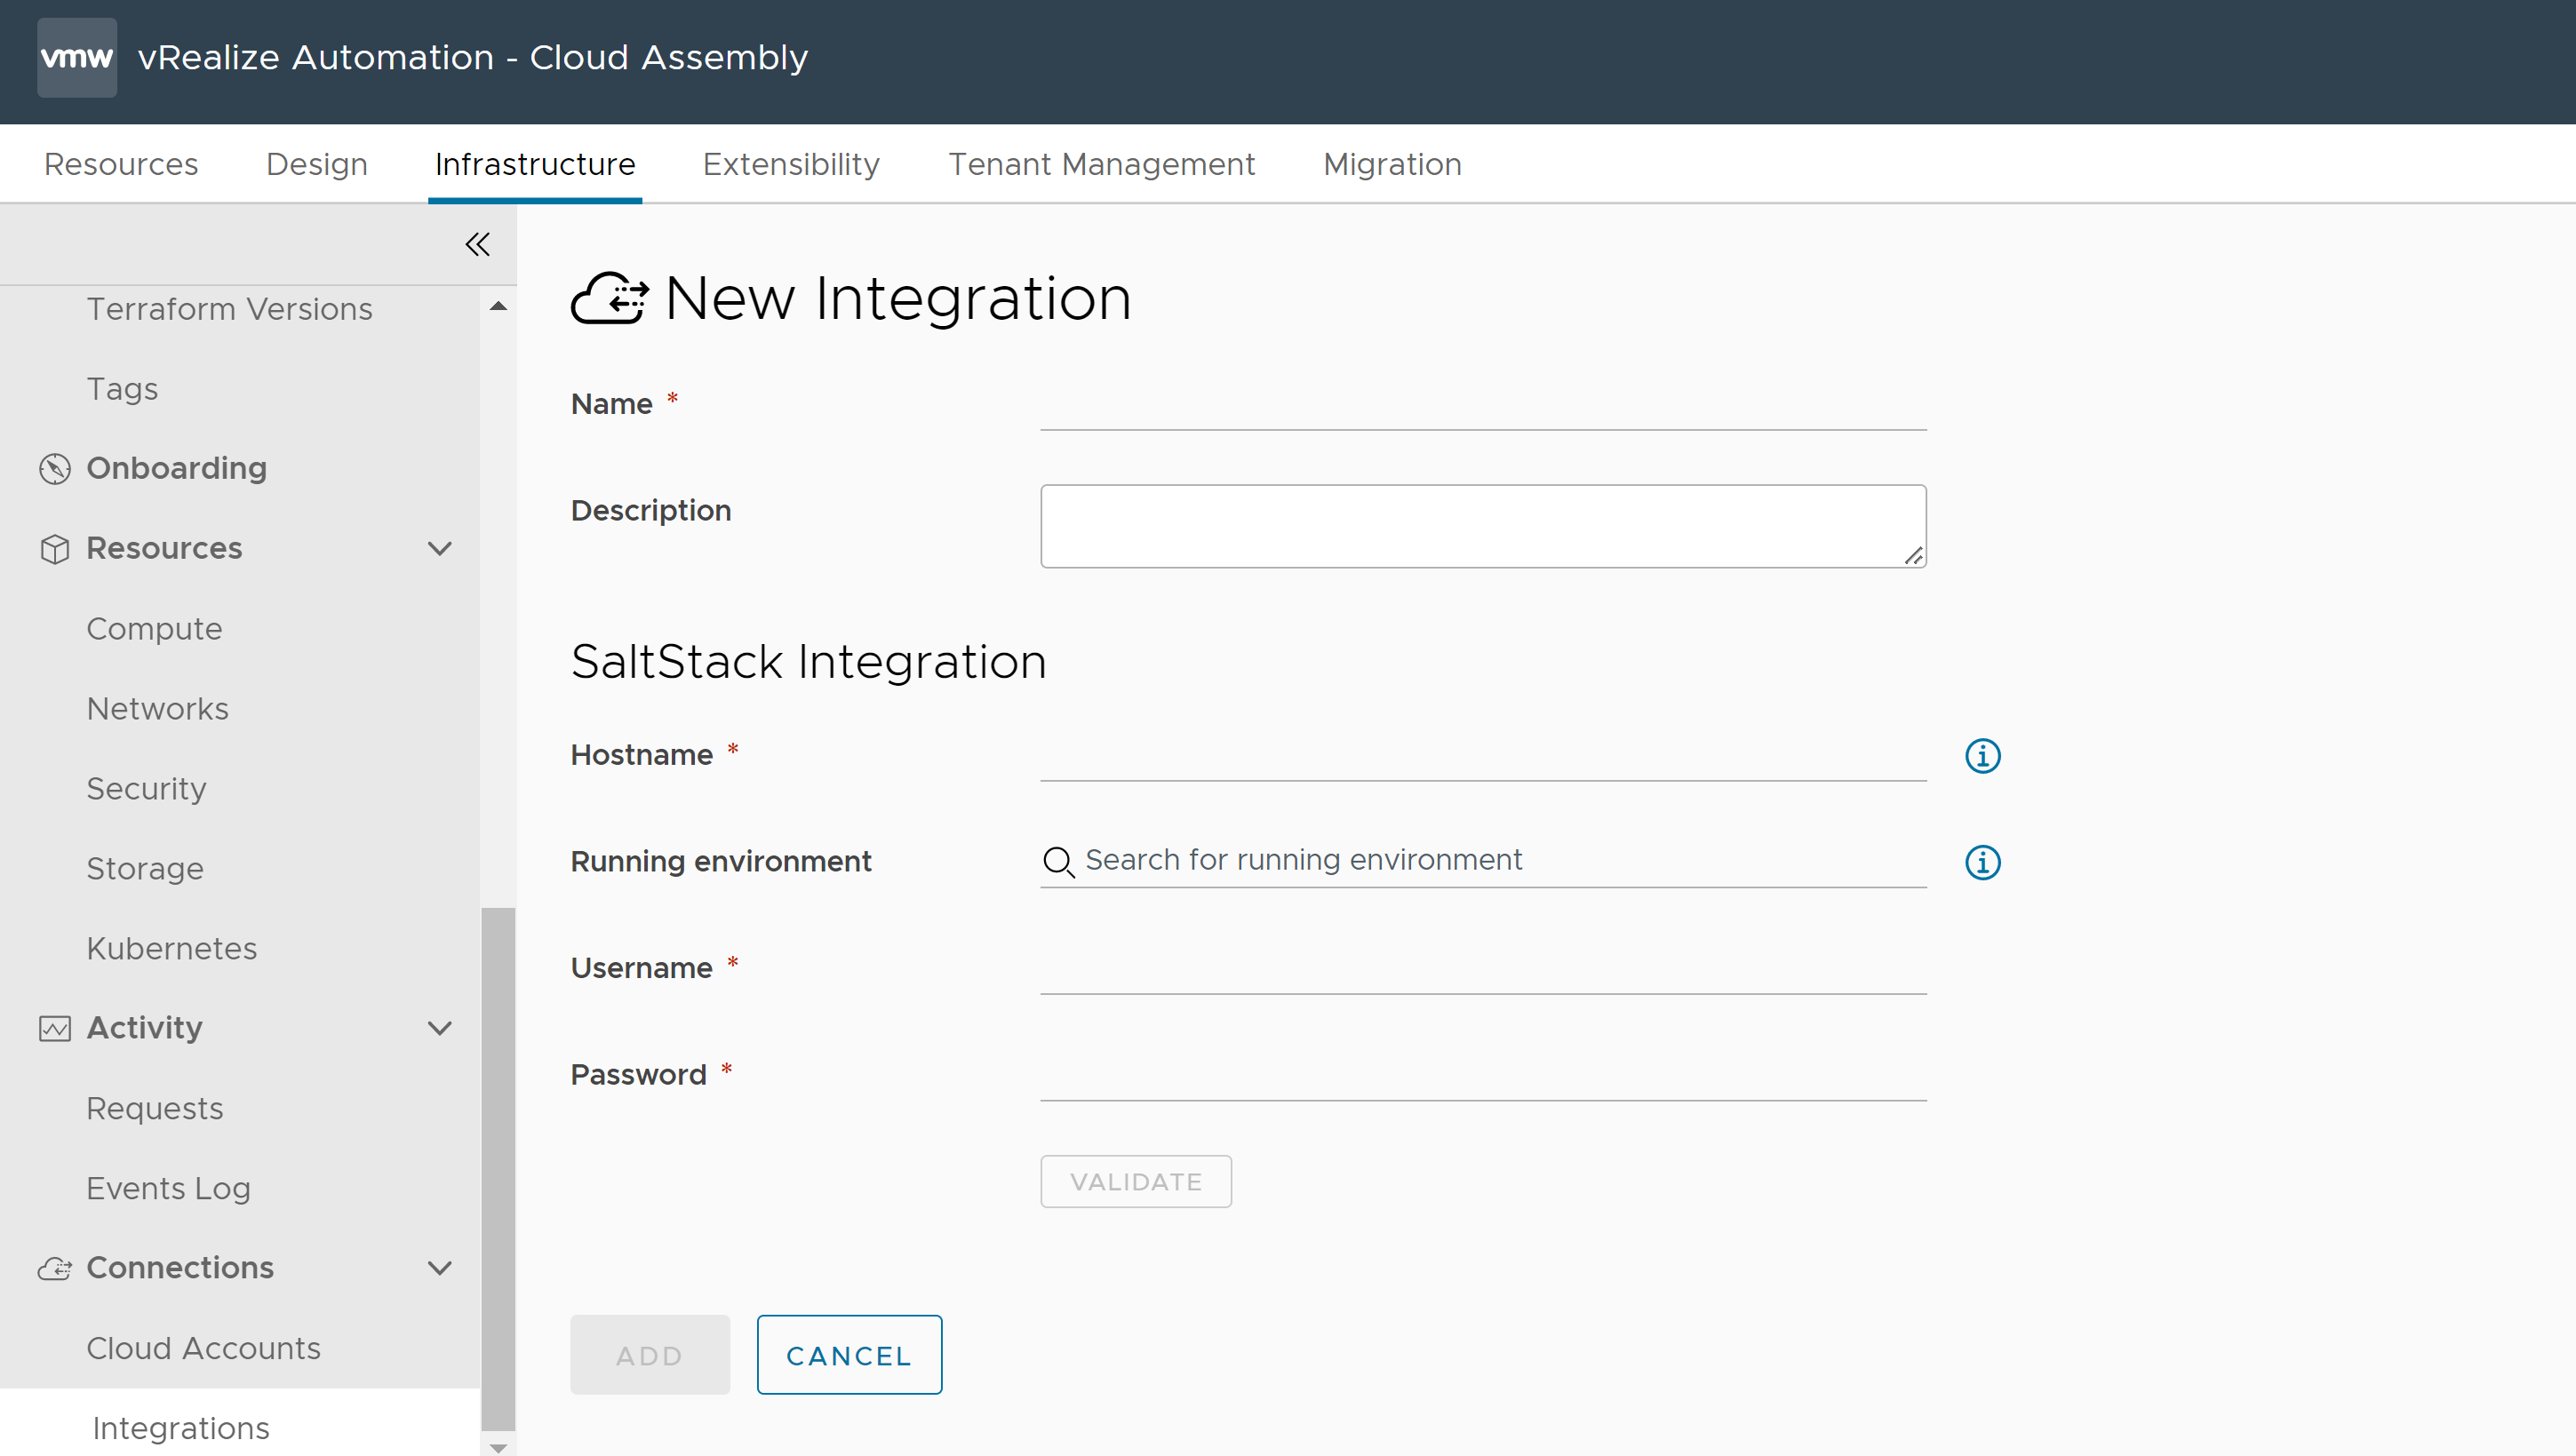 Formulário para criar uma nova integração no Cloud Assembly